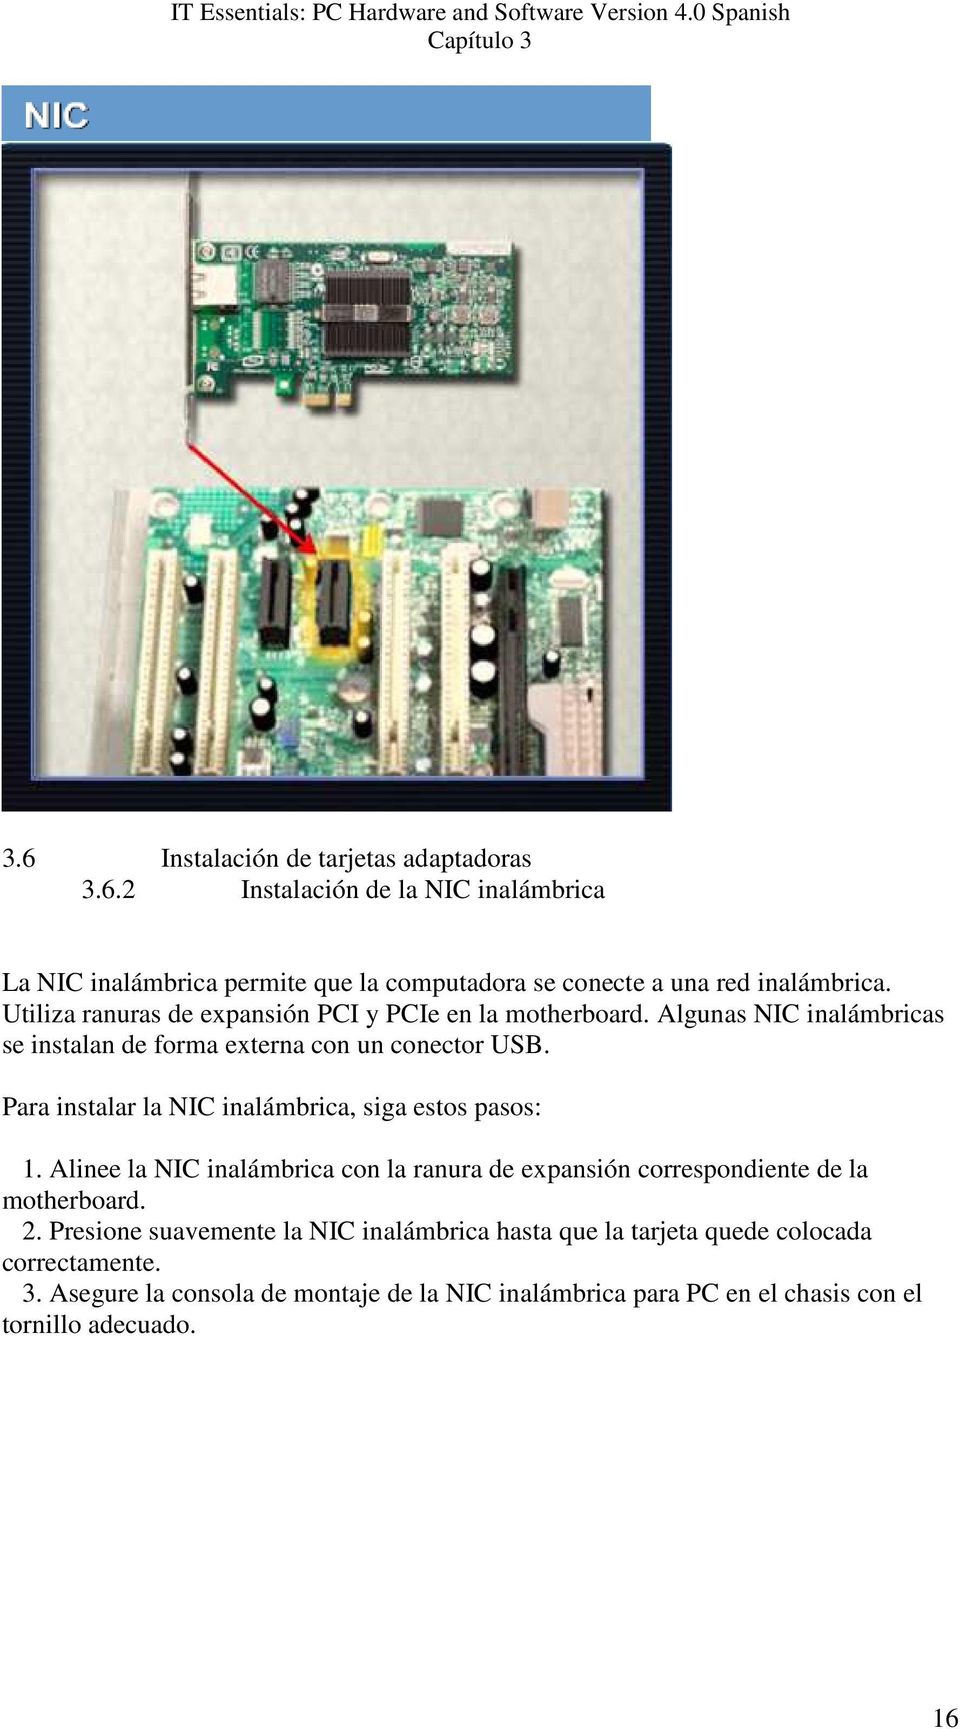 Para instalar la NIC inalámbrica, siga estos pasos: 1. Alinee la NIC inalámbrica con la ranura de expansión correspondiente de la motherboard. 2.